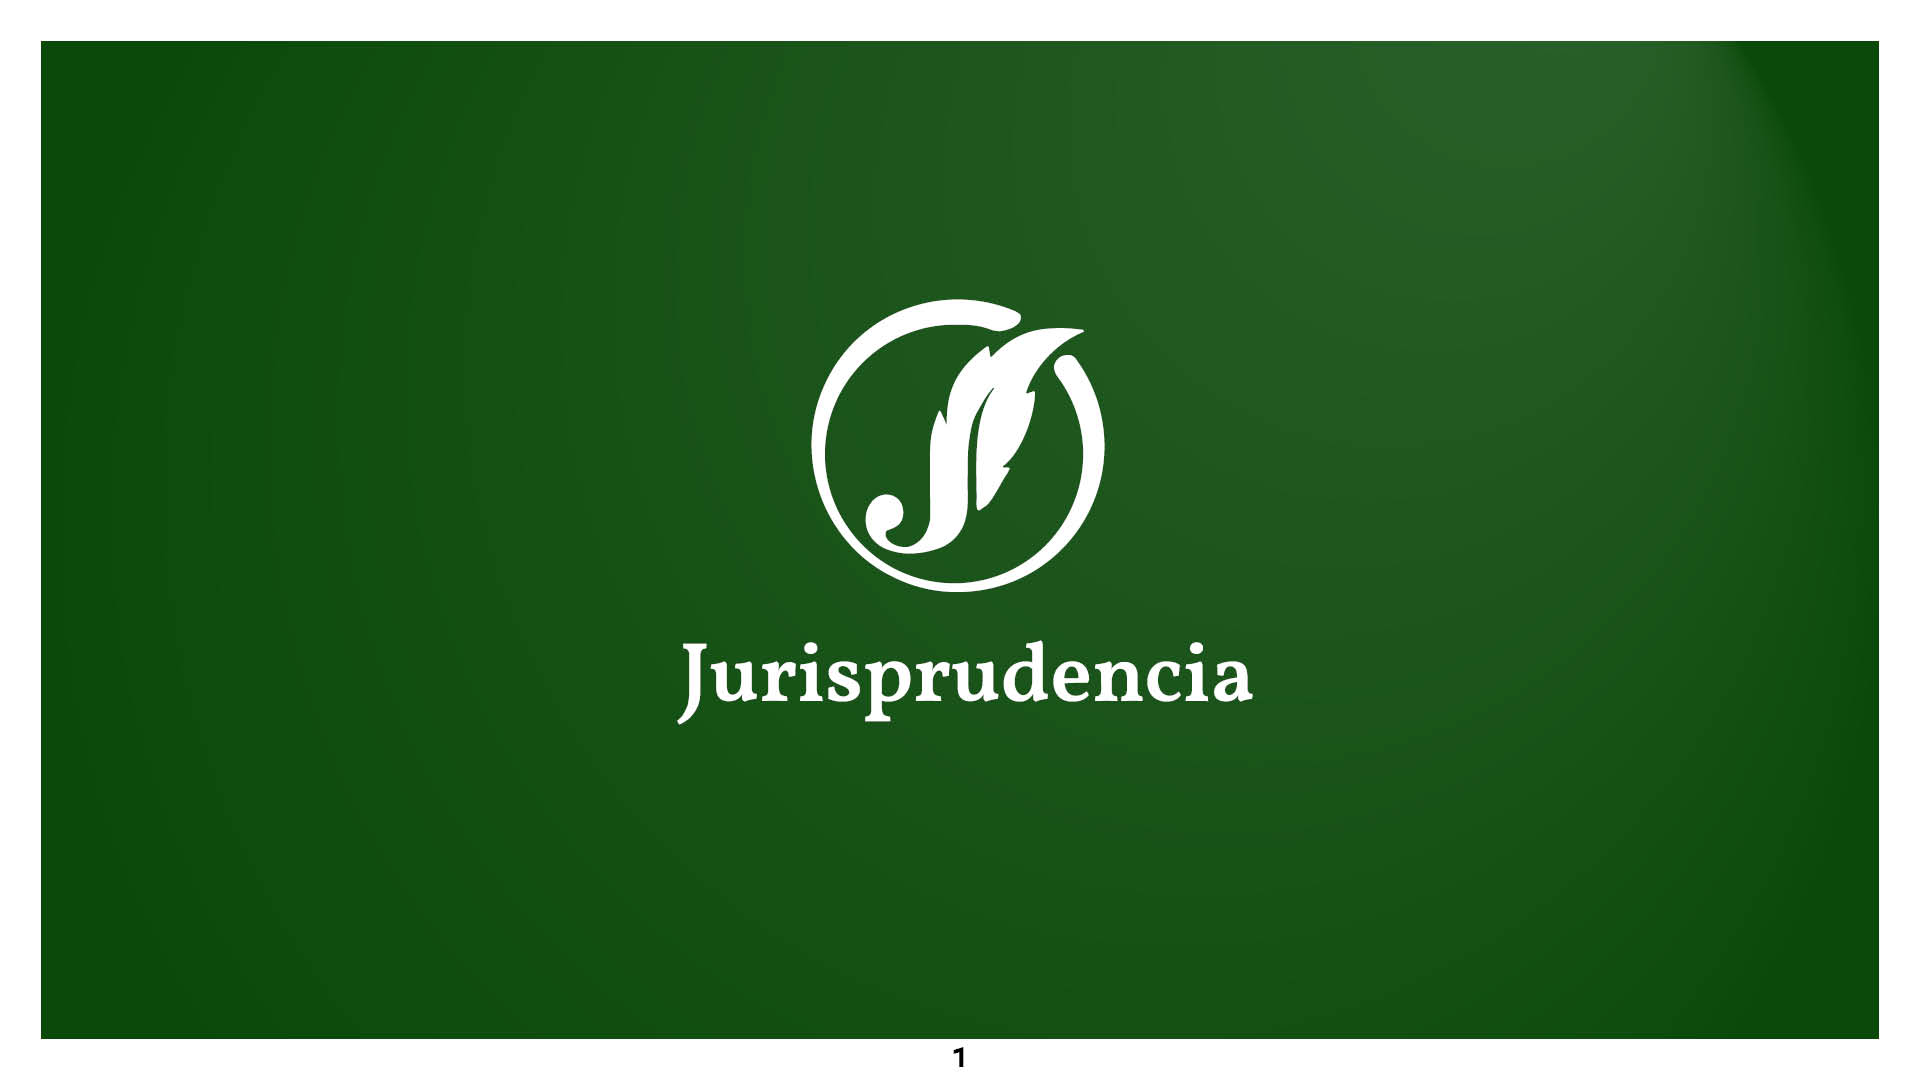 jurisprudencia_book